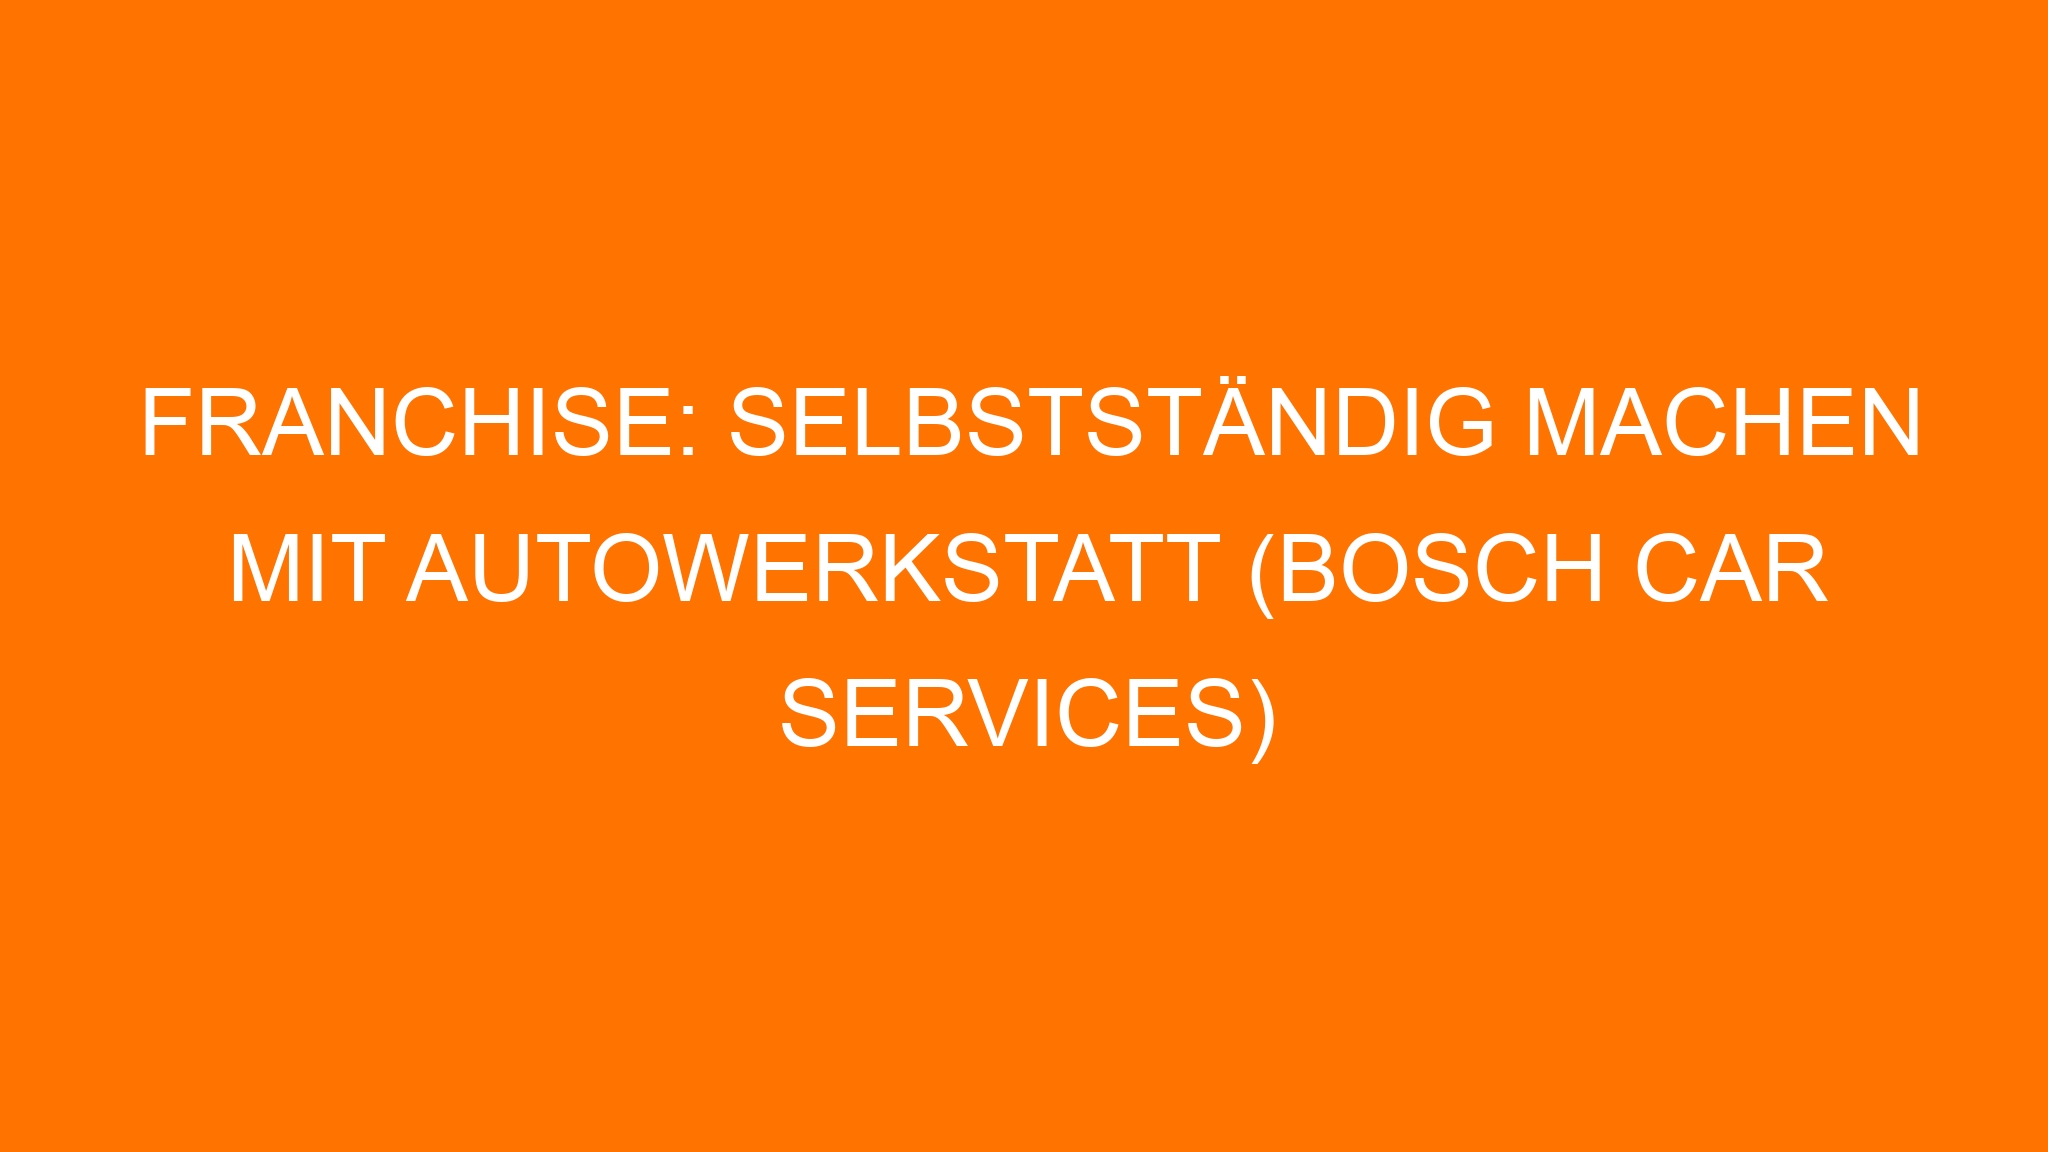 Franchise: Selbstständig machen mit Autowerkstatt (Bosch Car Services)